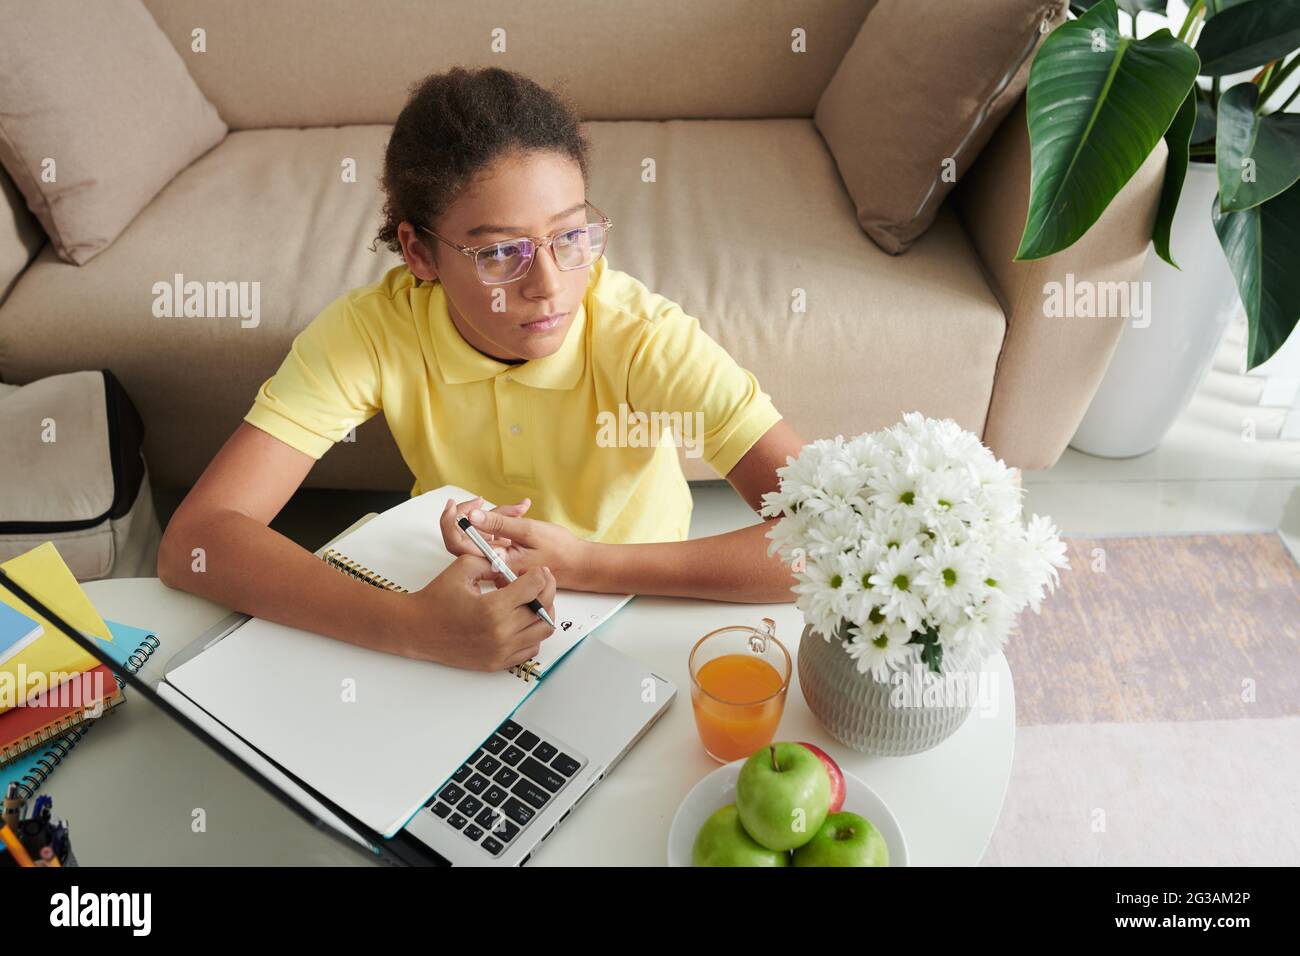 Ragazza adolescente di razza mista di pene in bicchieri seduti a tavolino con fiori in vaso e utilizzando il computer portatile mentre prendendo note su articolo online Foto Stock